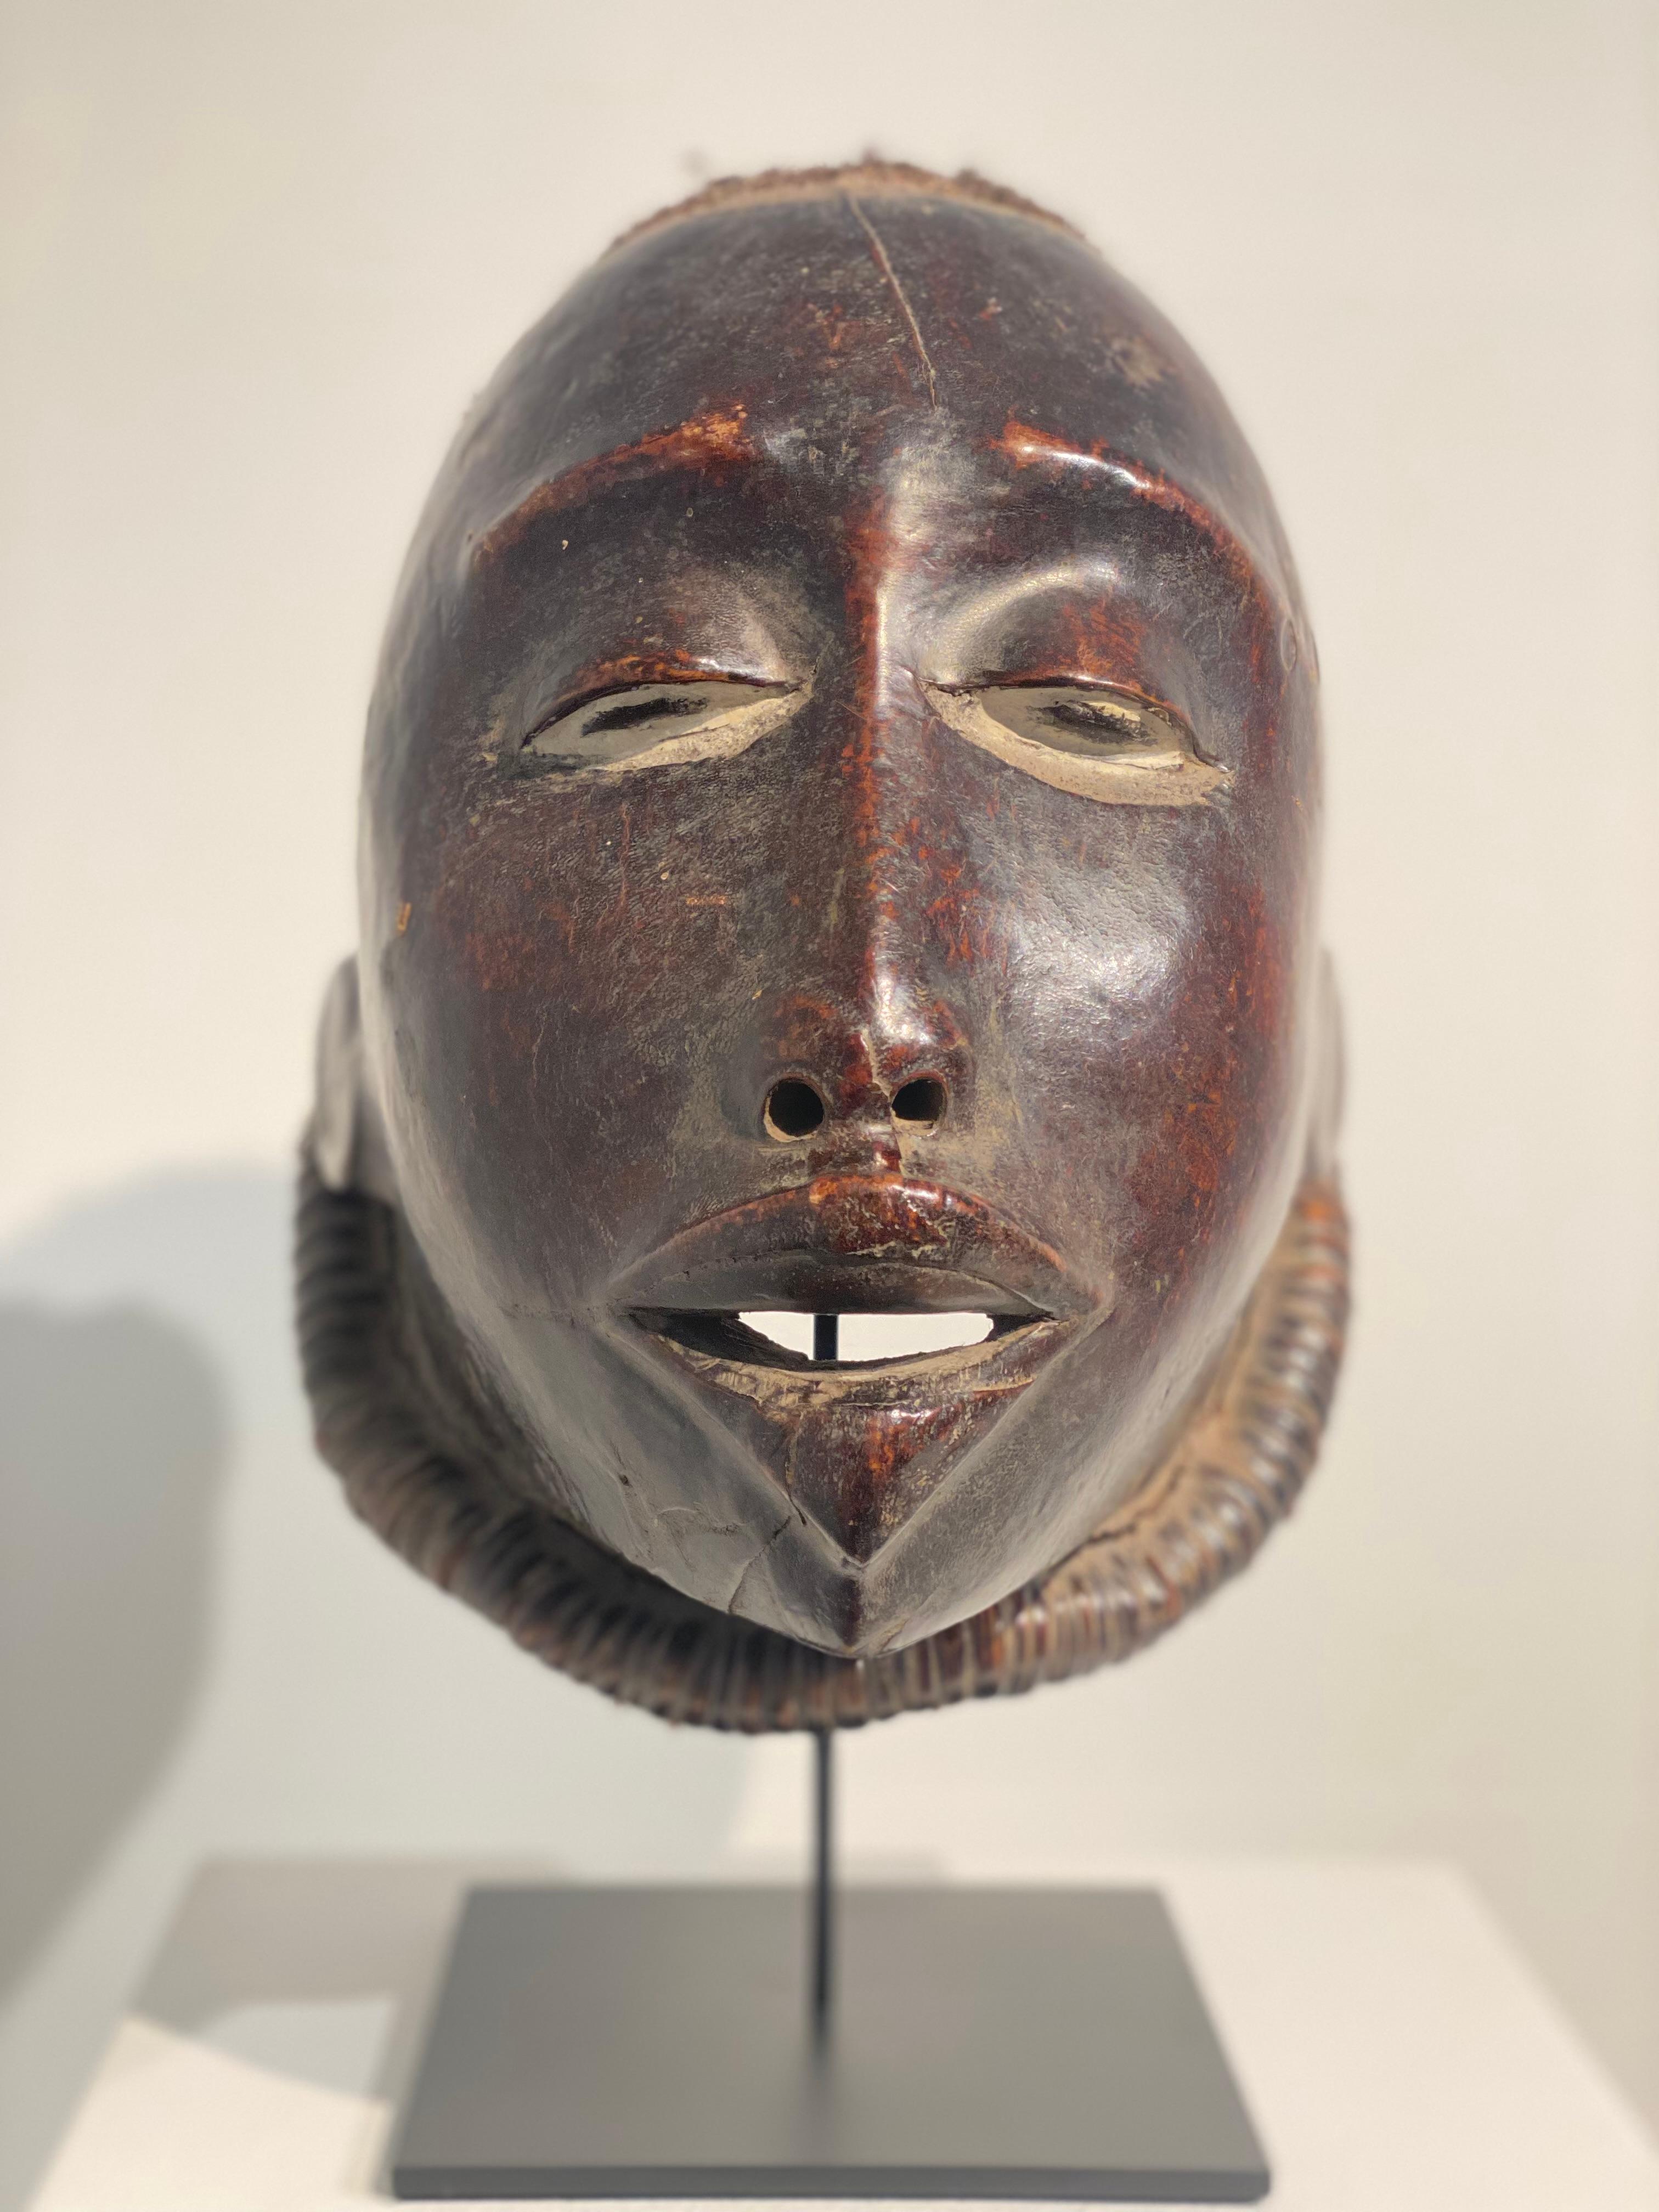 Schöne afrikanische Maske aus Mosambik,
Makonde-Stamm, aus der Zeit um 1965,
die Maske hat eine tolle alte Patina und Glanz,
aus Holz, Tierhaut und menschlicher Luft,
mächtiges Sammlerstück